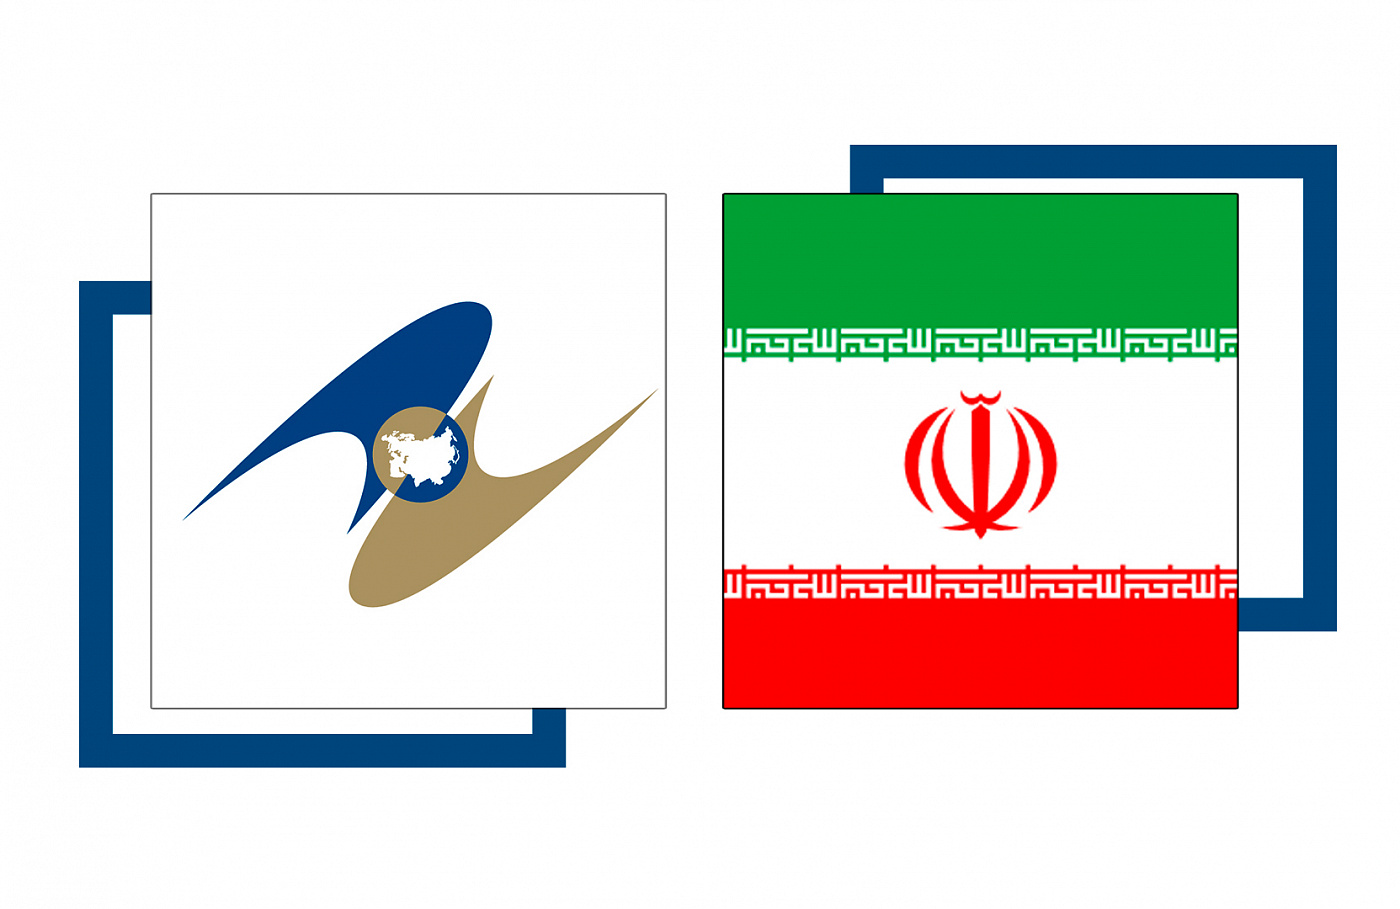 В ЕЭК задумались над созданием инфраструктуры для взаимодействия с Ираном